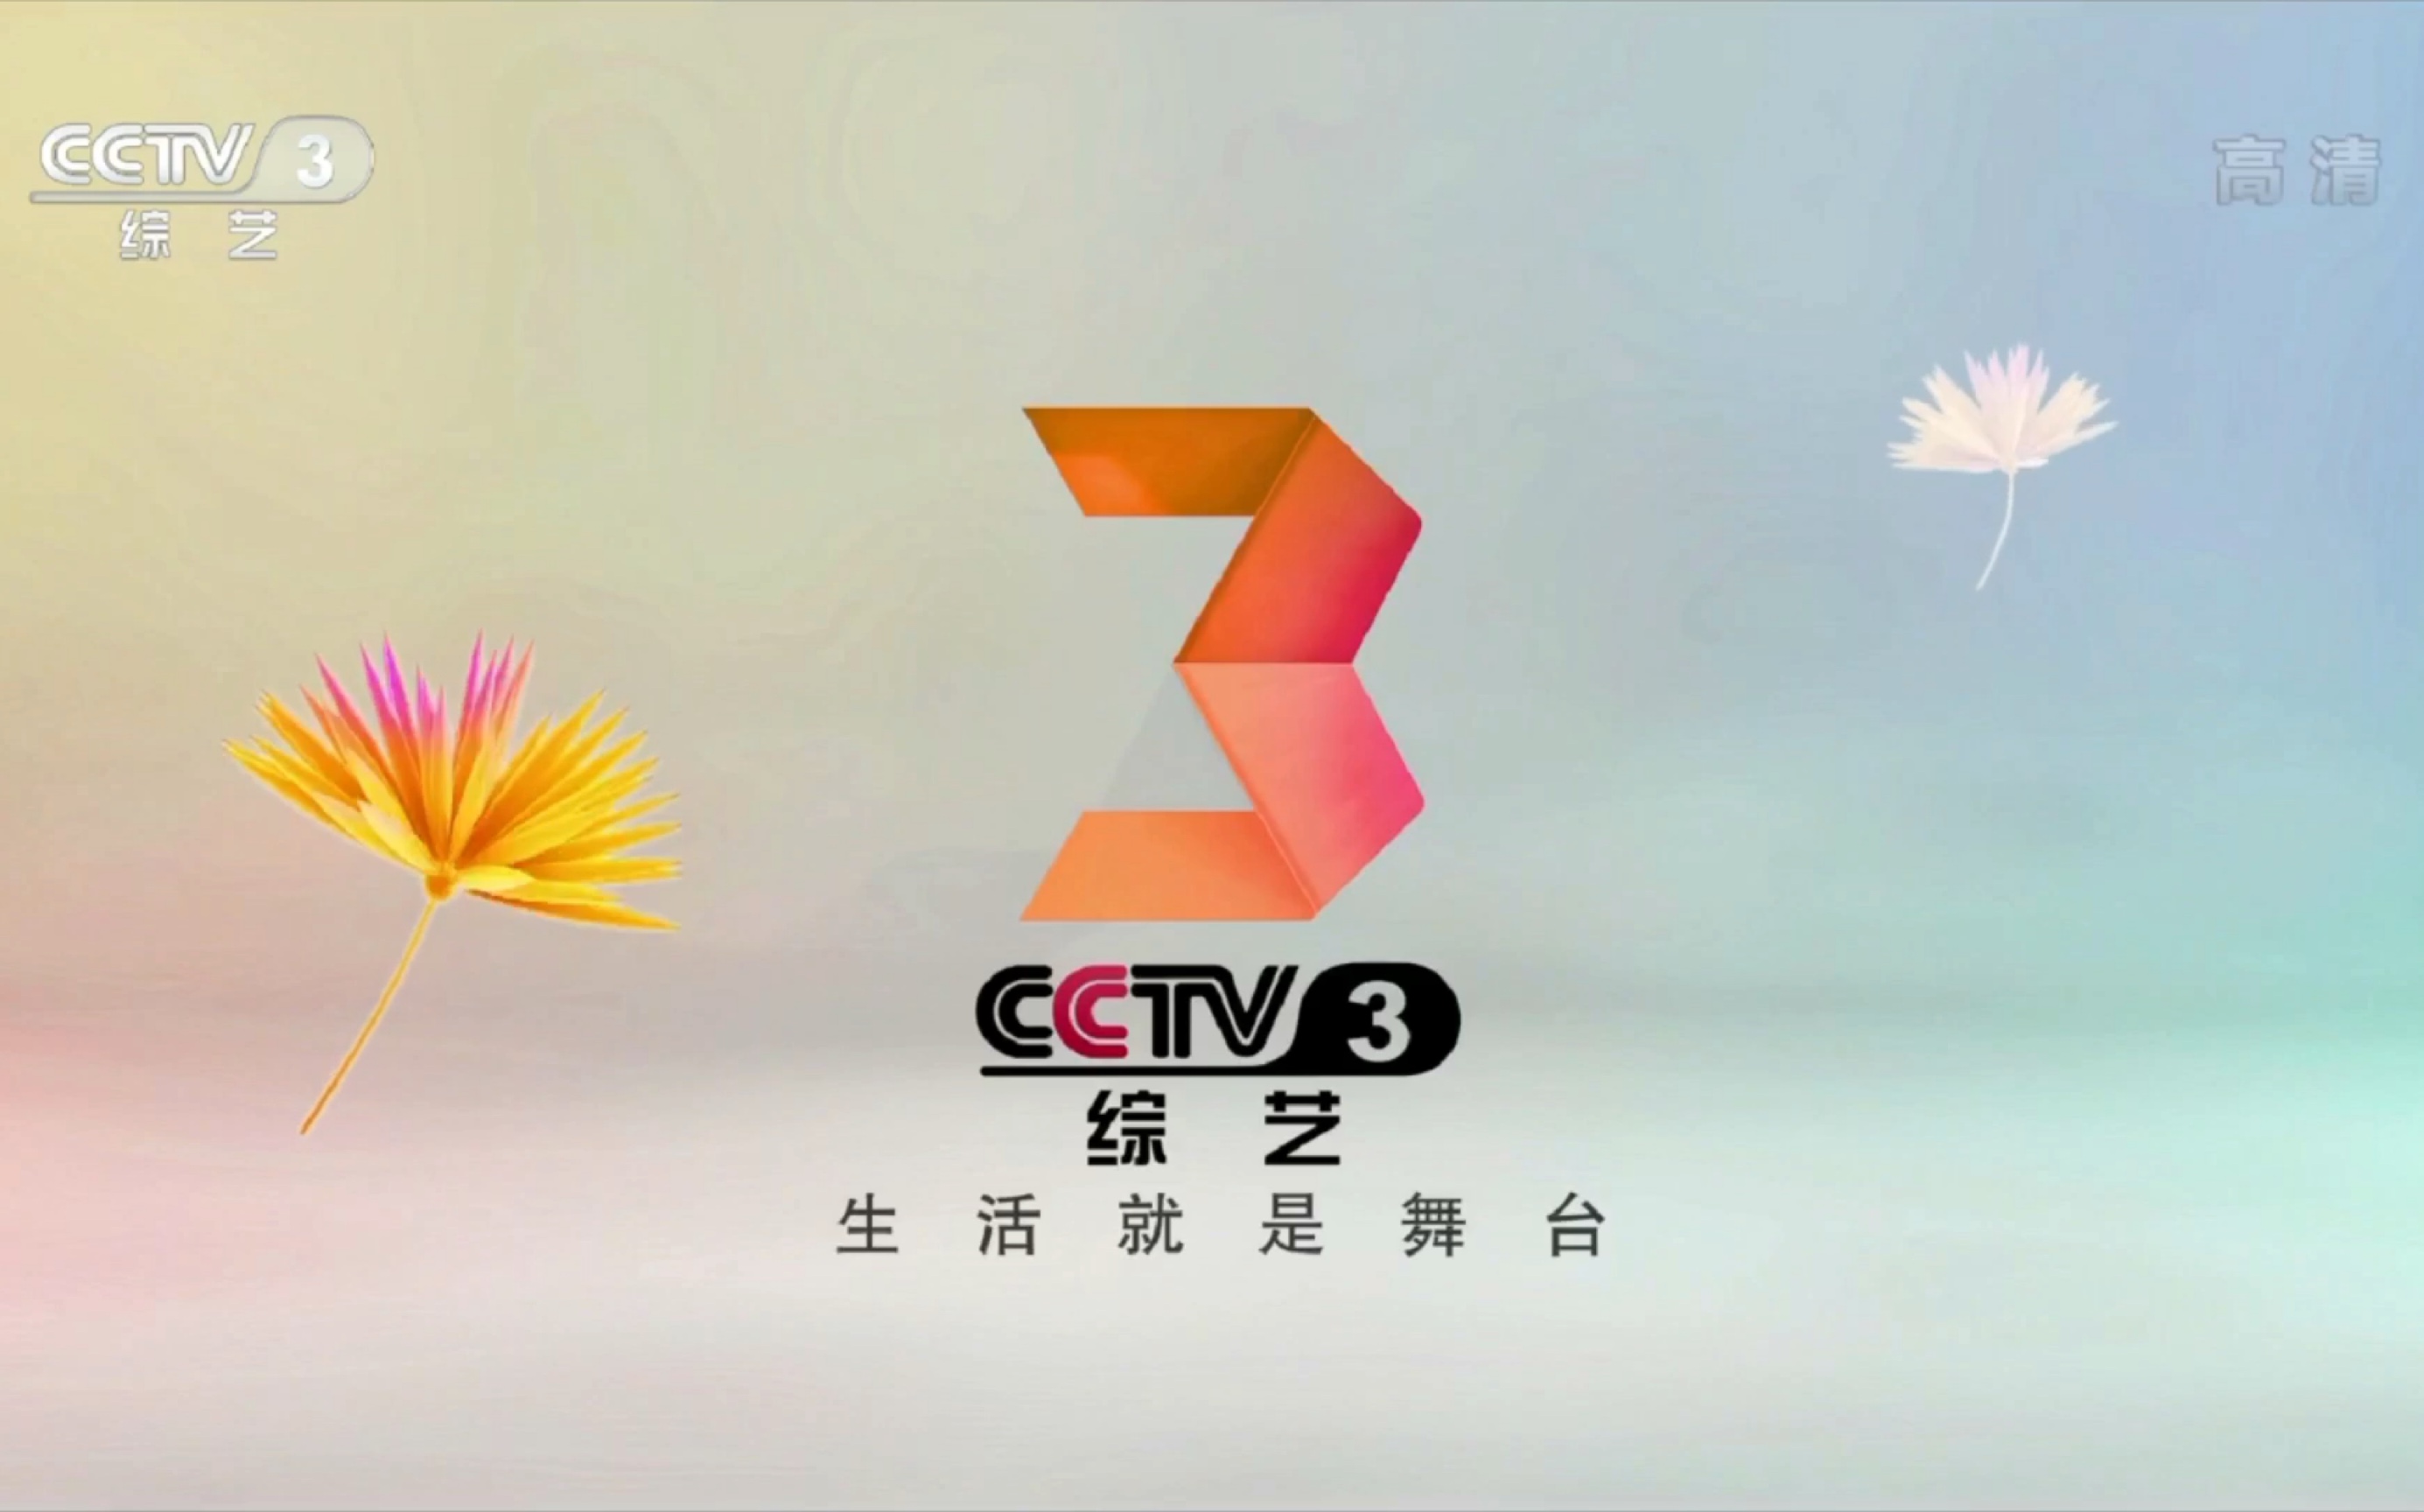 广播电视cctv3综艺频道上将许世友下集预告2016id节目预告天天把歌唱